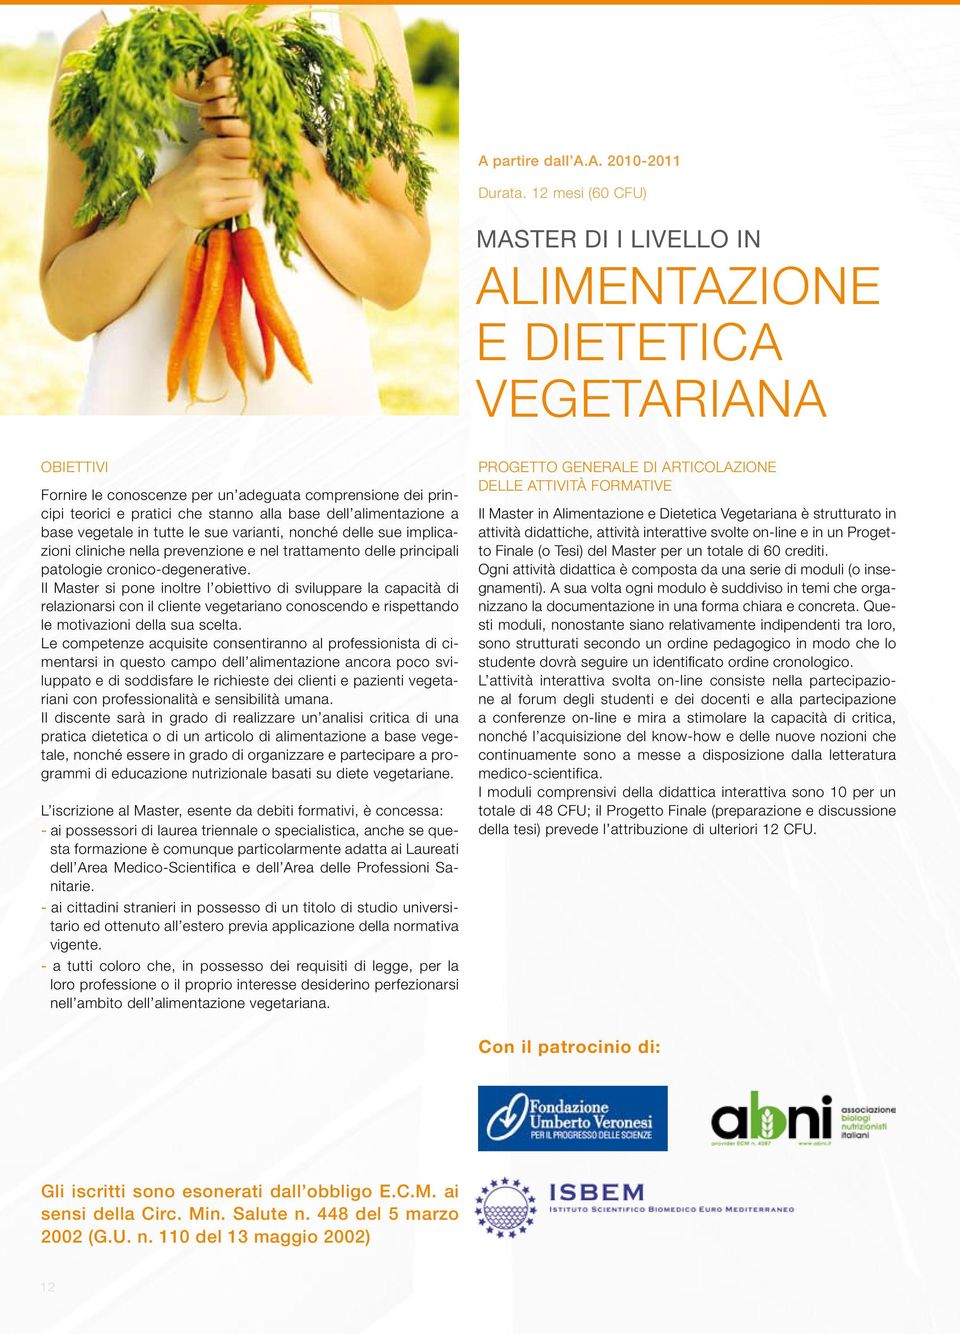 alimentazione a base vegetale in tutte le sue varianti, nonché delle sue implicazioni cliniche nella prevenzione e nel trattamento delle principali patologie cronico-degenerative.